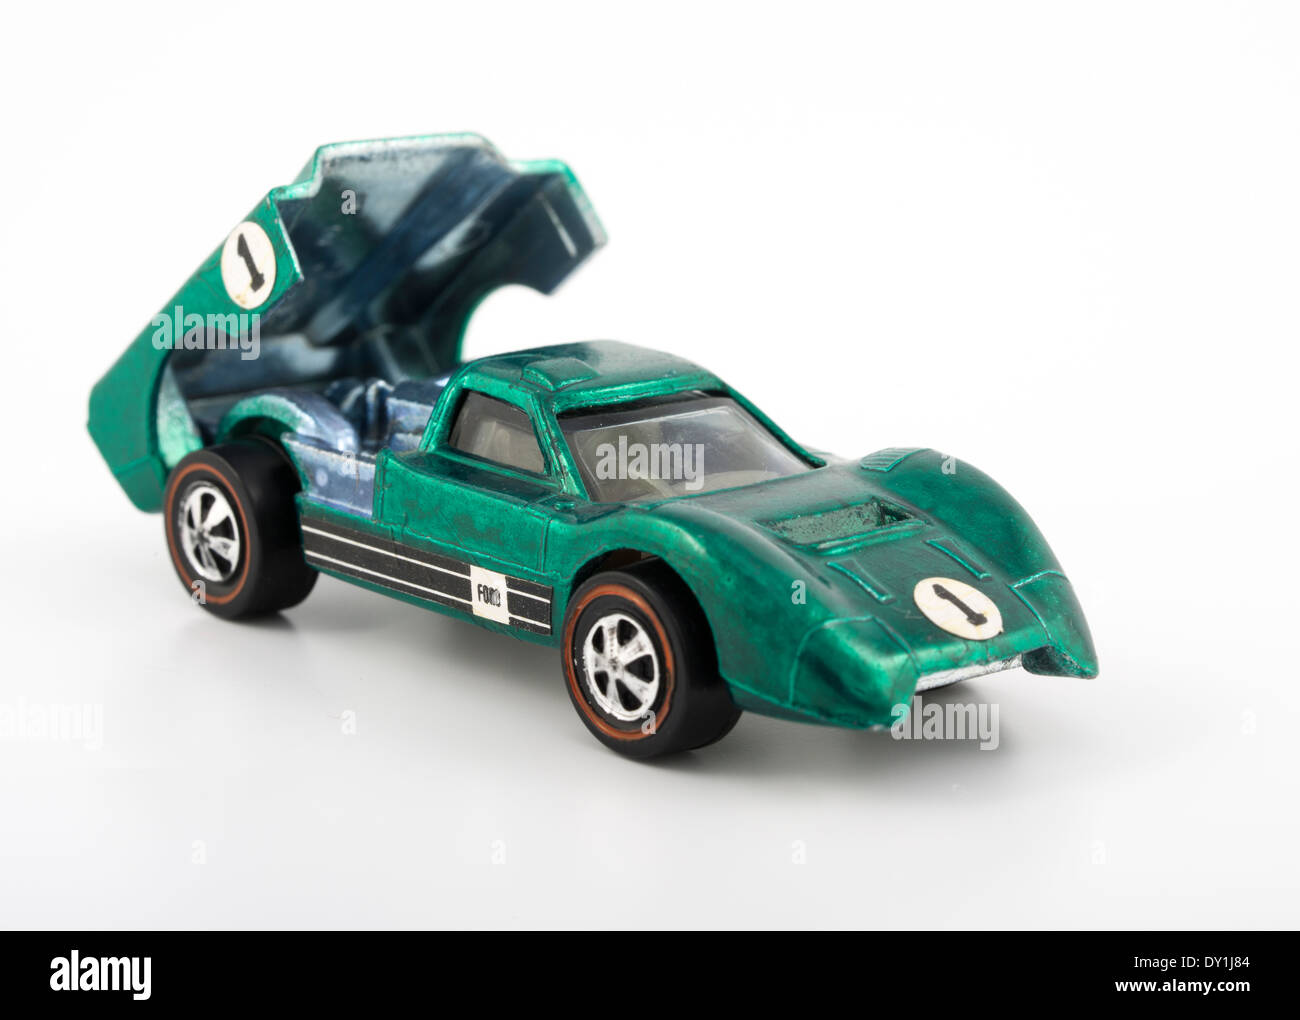 Ford Voiture verte J-die-cast Hot Wheels voitures jouets de Mattel 1968 avec peinture Spectraflame Banque D'Images